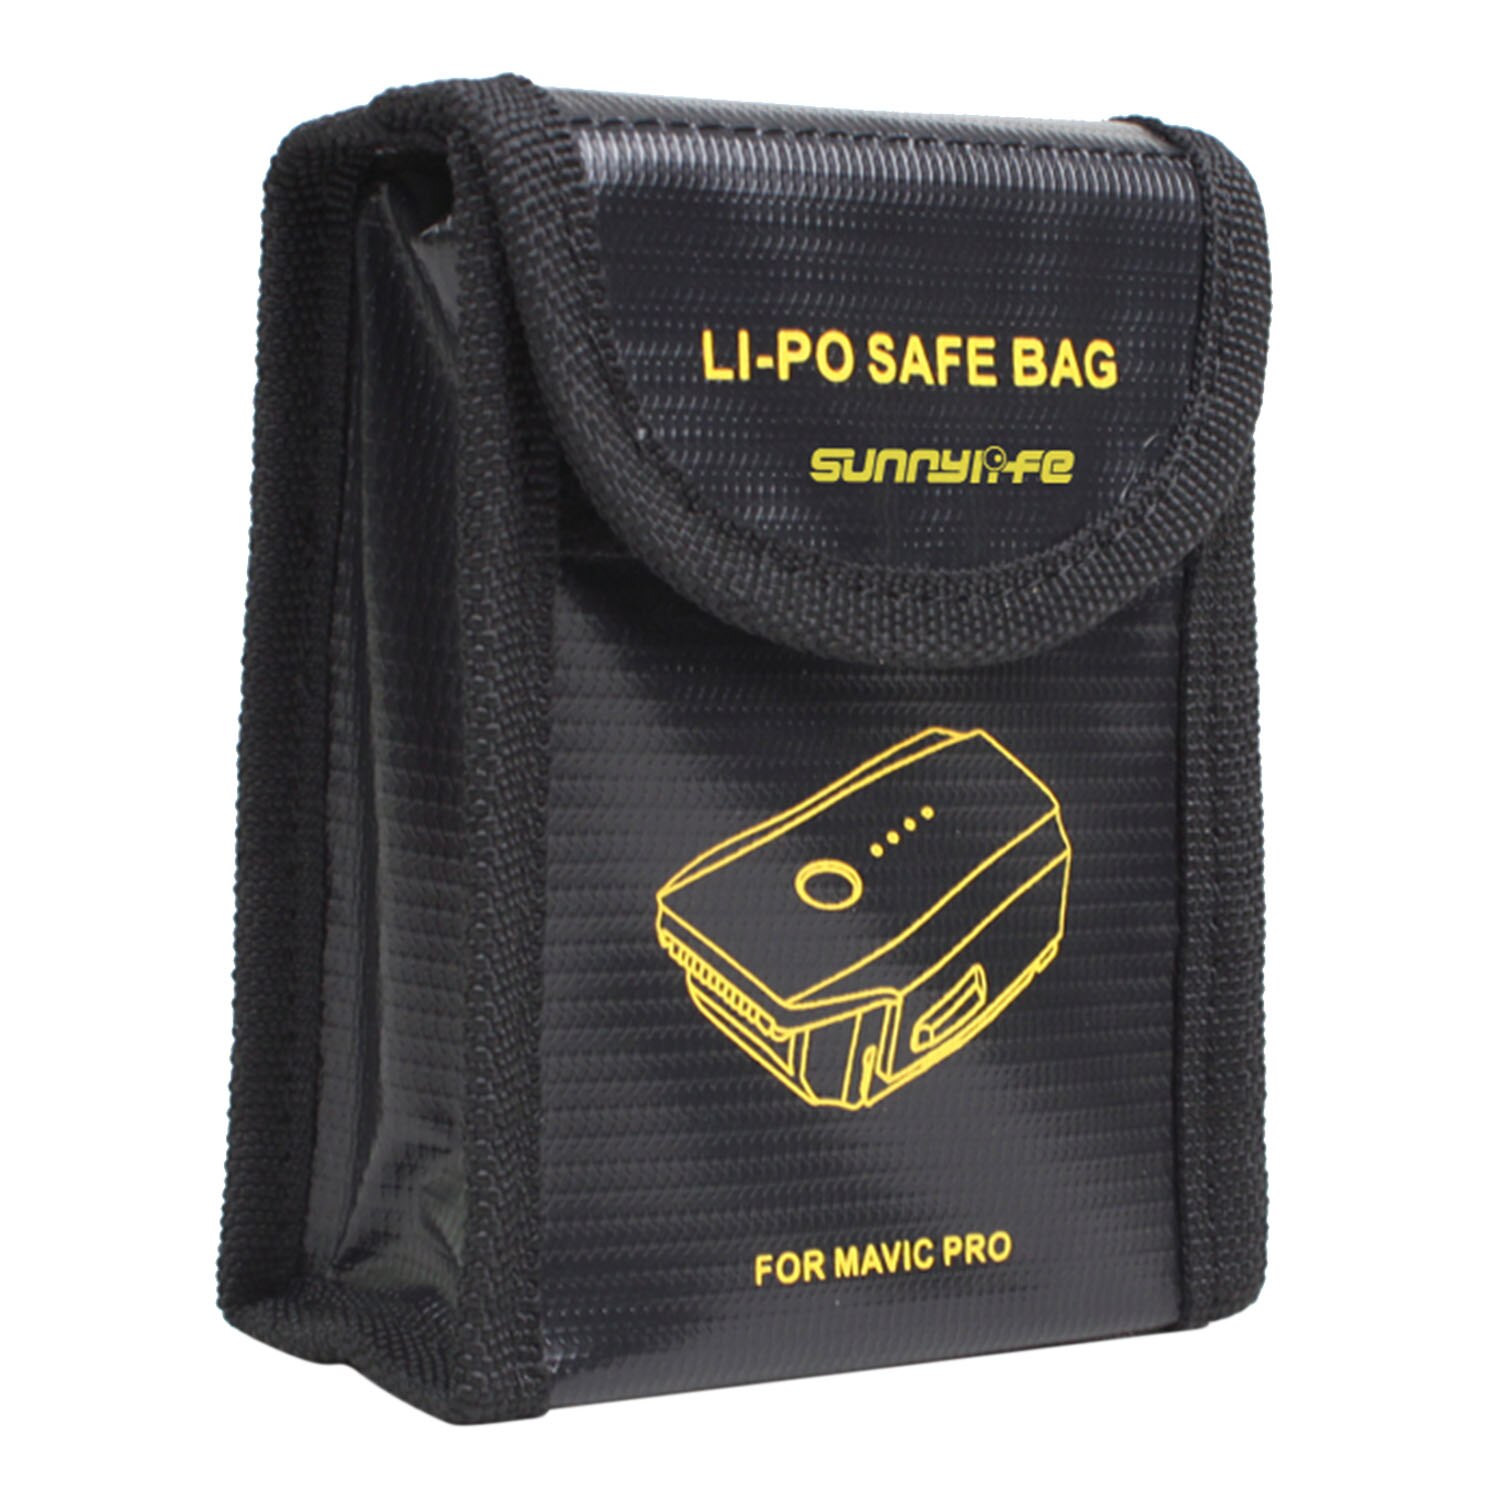 SUNNYLIFE Hittebestendigheid Explosieveilige Lipo Batterij Veilig Veiligheid Guard Zakje Opladen Opslag Houder Voor DJI Mavic pro